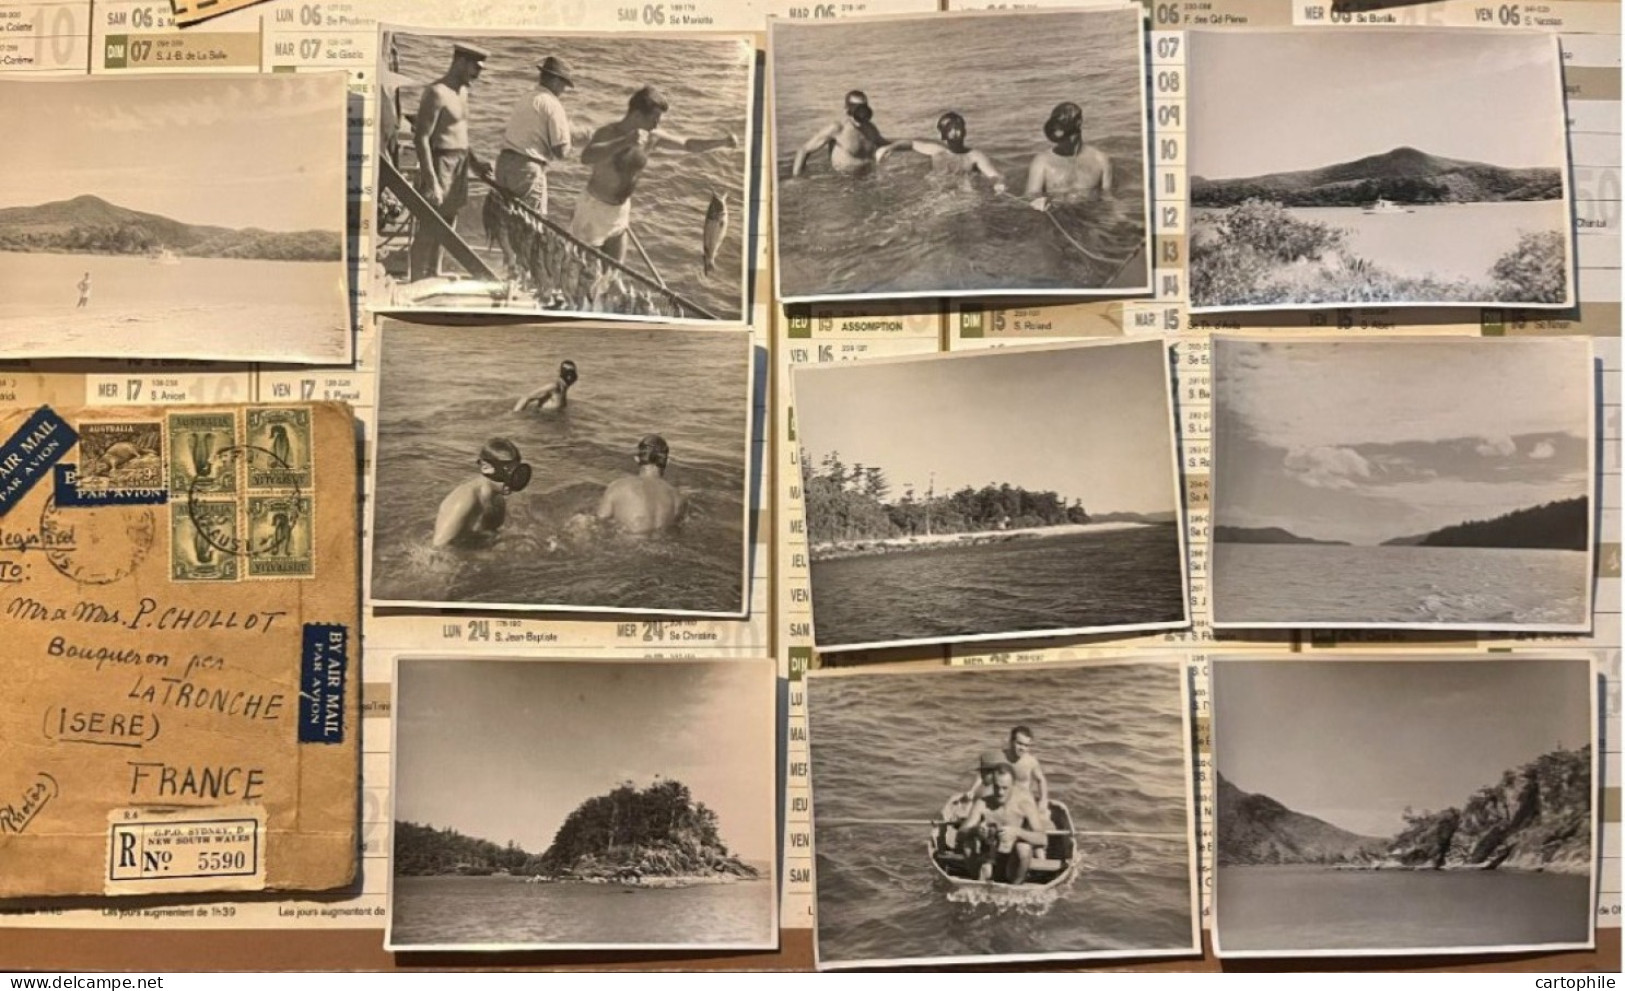 Australia - Lot De 10 Photos De 1948 Barrière De Corail Prise Par Chollot Consulat Francais à Sydney NSW Bowen Peche - Océanie